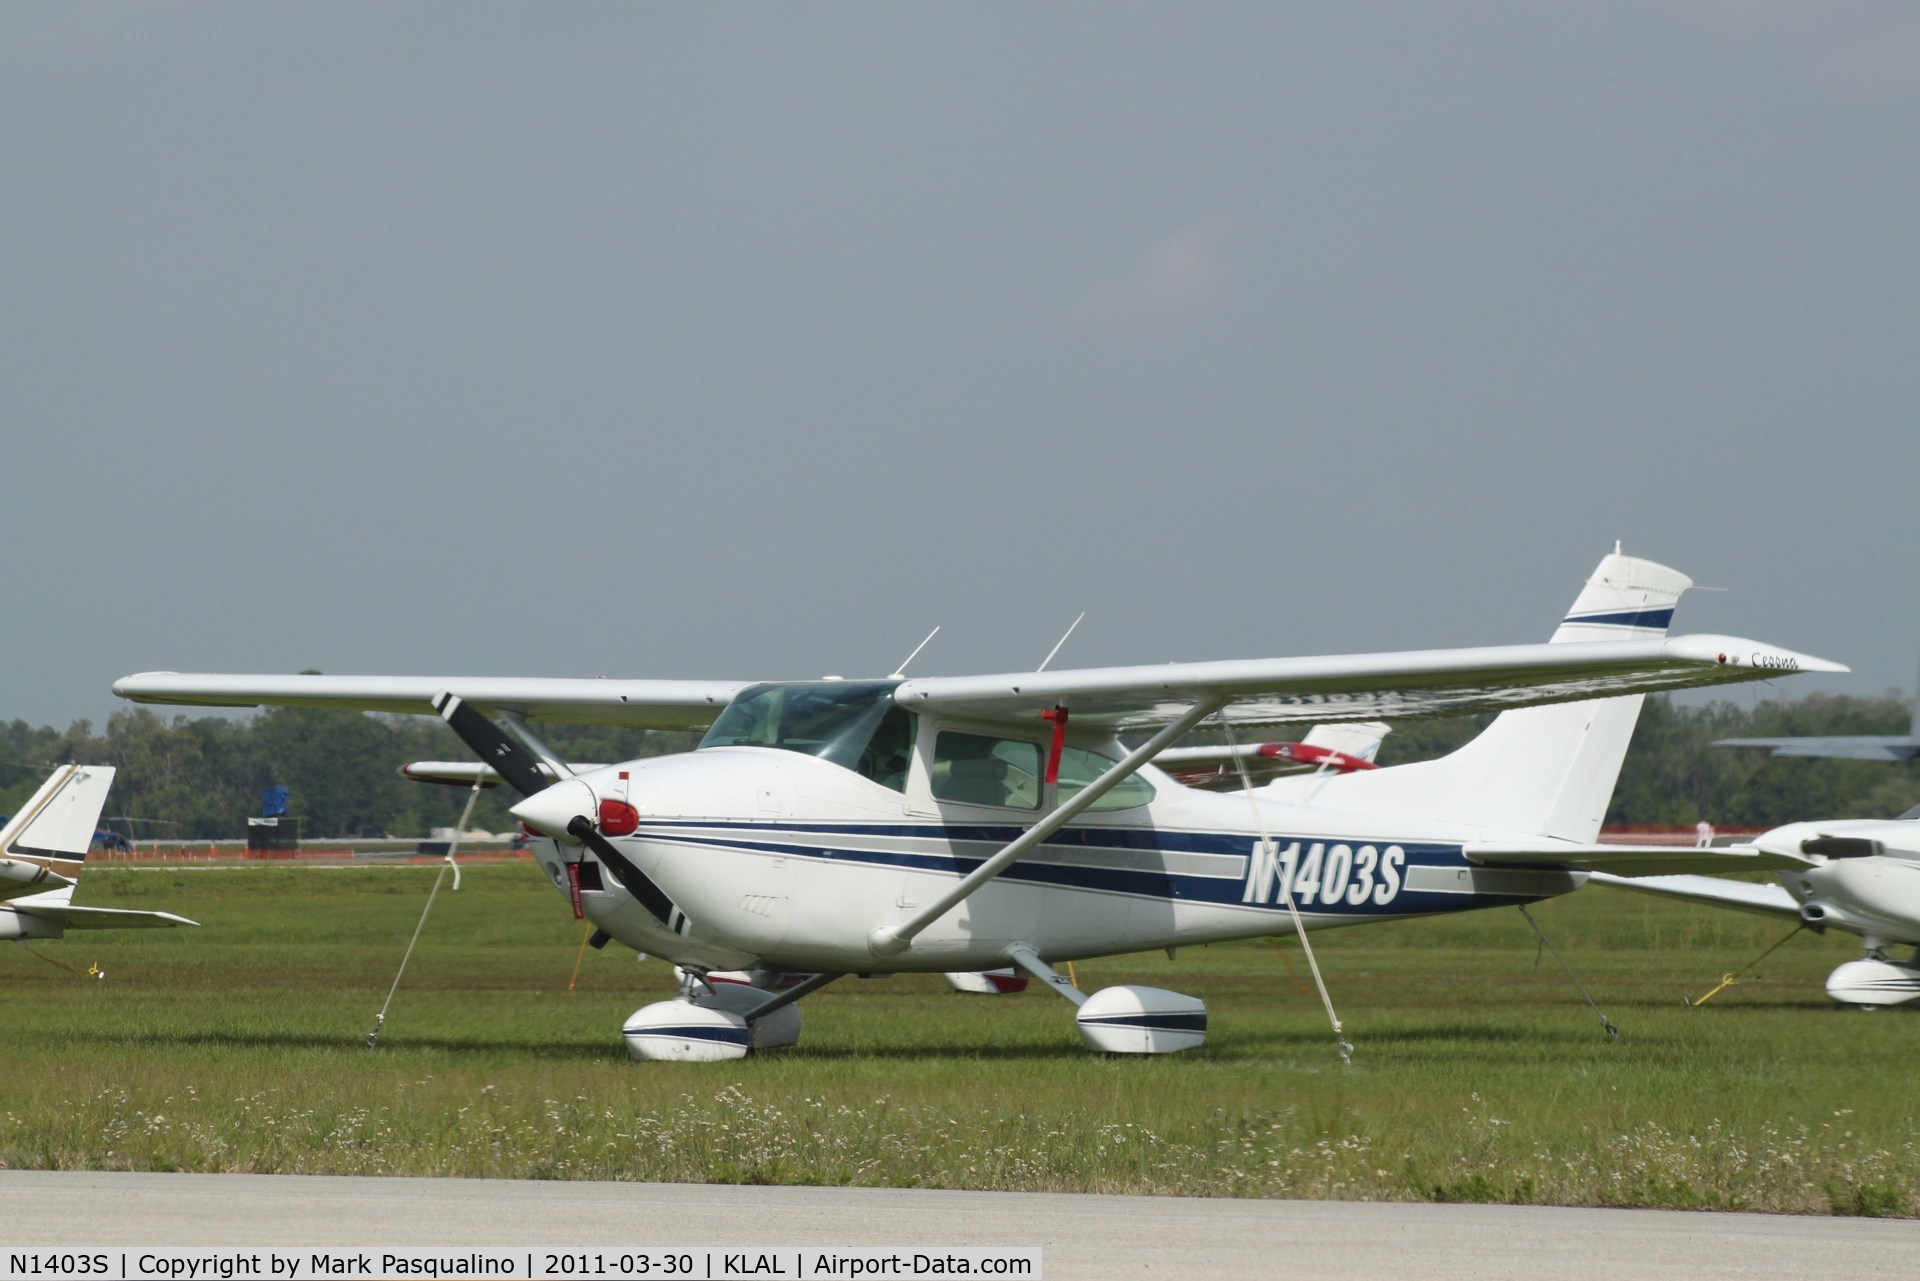 N1403S, 1976 Cessna 182P Skylane C/N 18264963, Cessna 182P